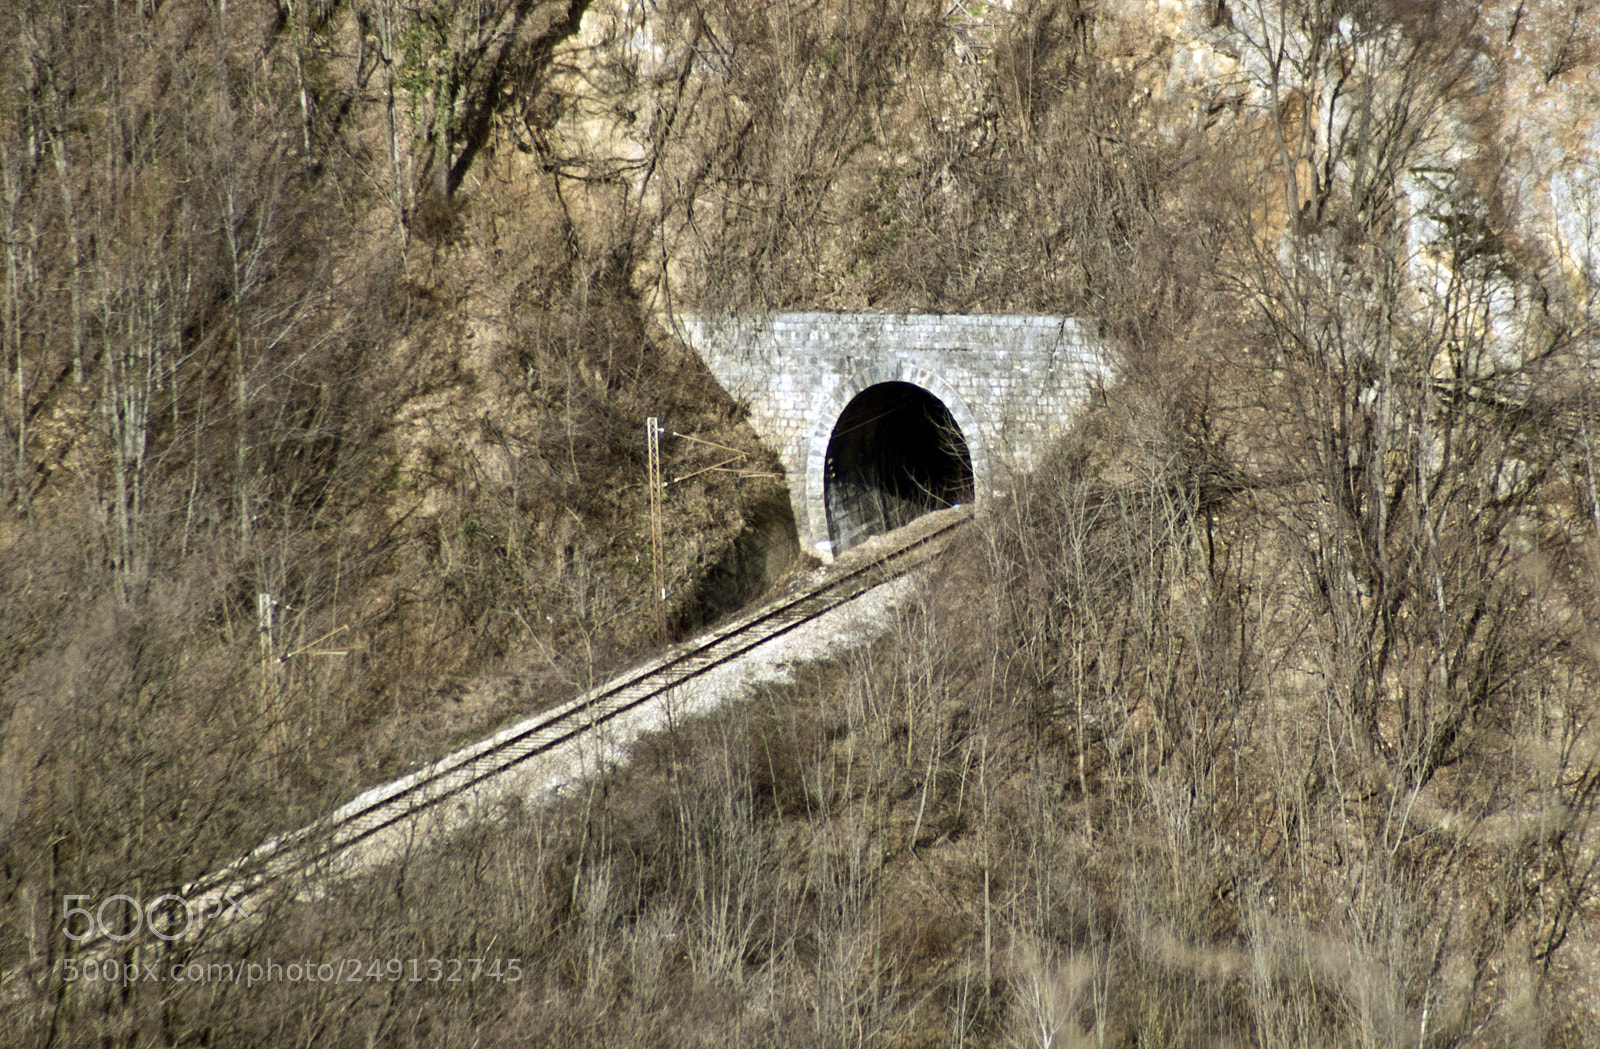 Sony SLT-A33 sample photo. Railway tunnel photography